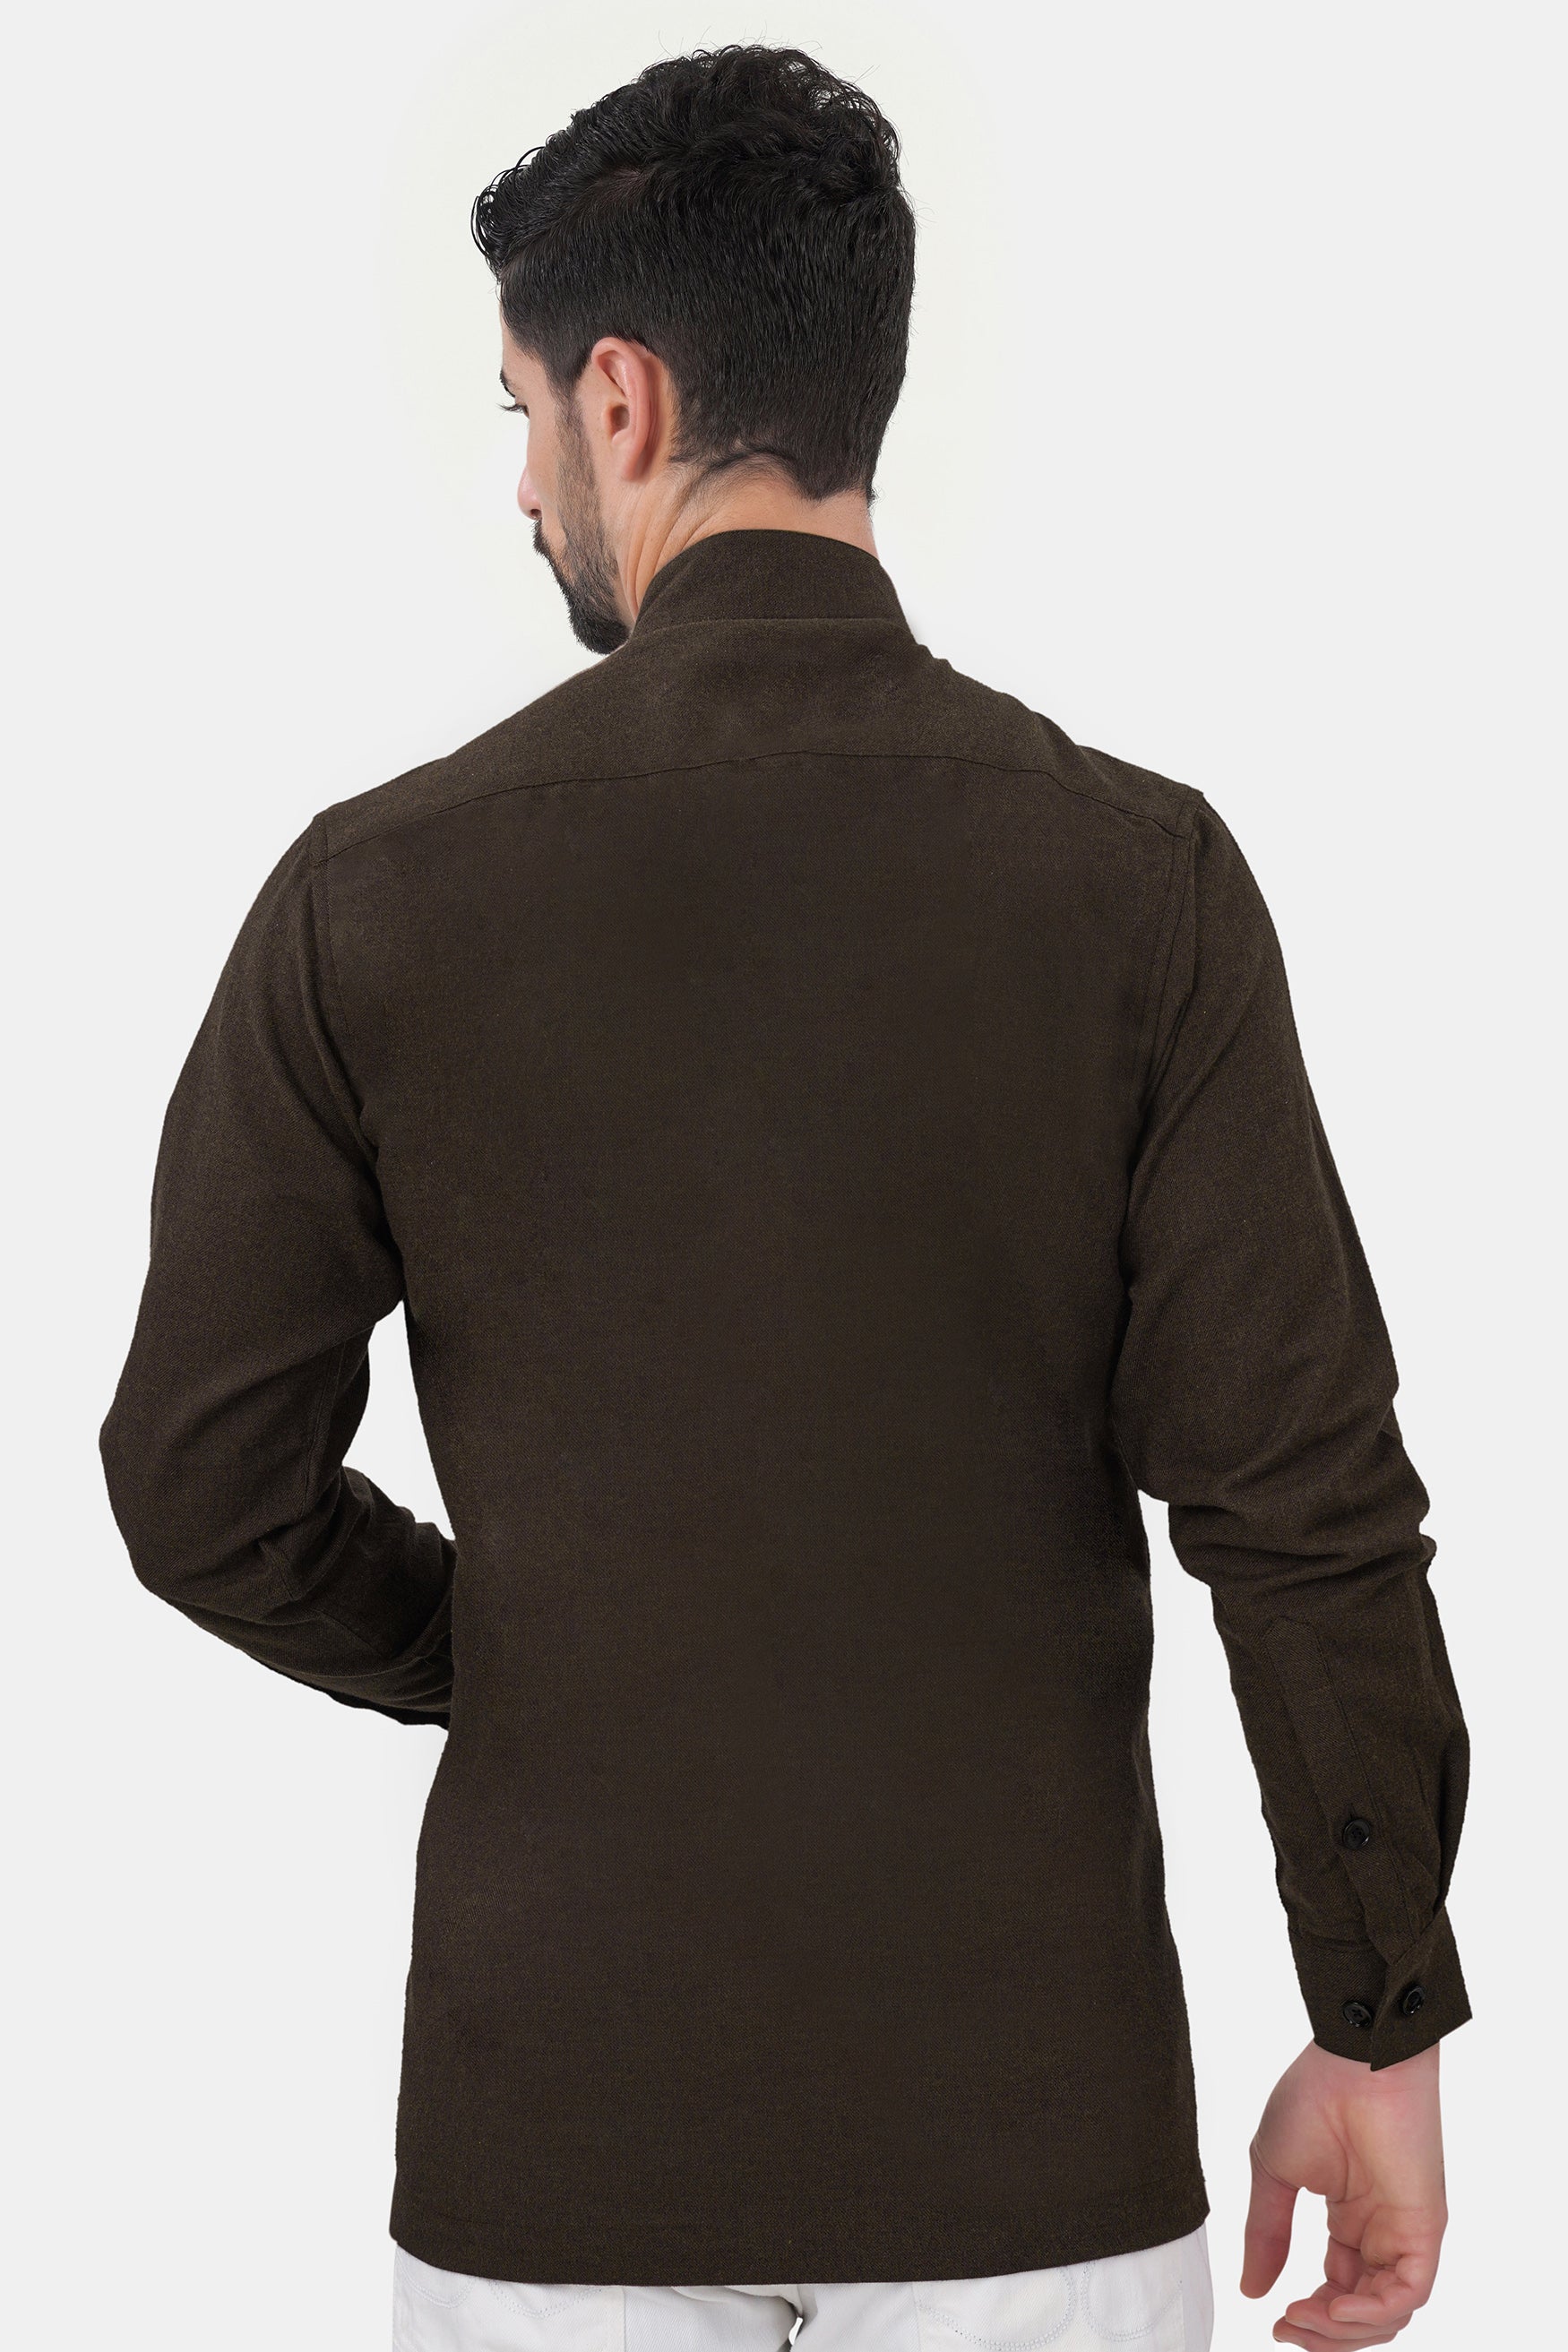 Bistre Brown Flannel Designer Overshirt